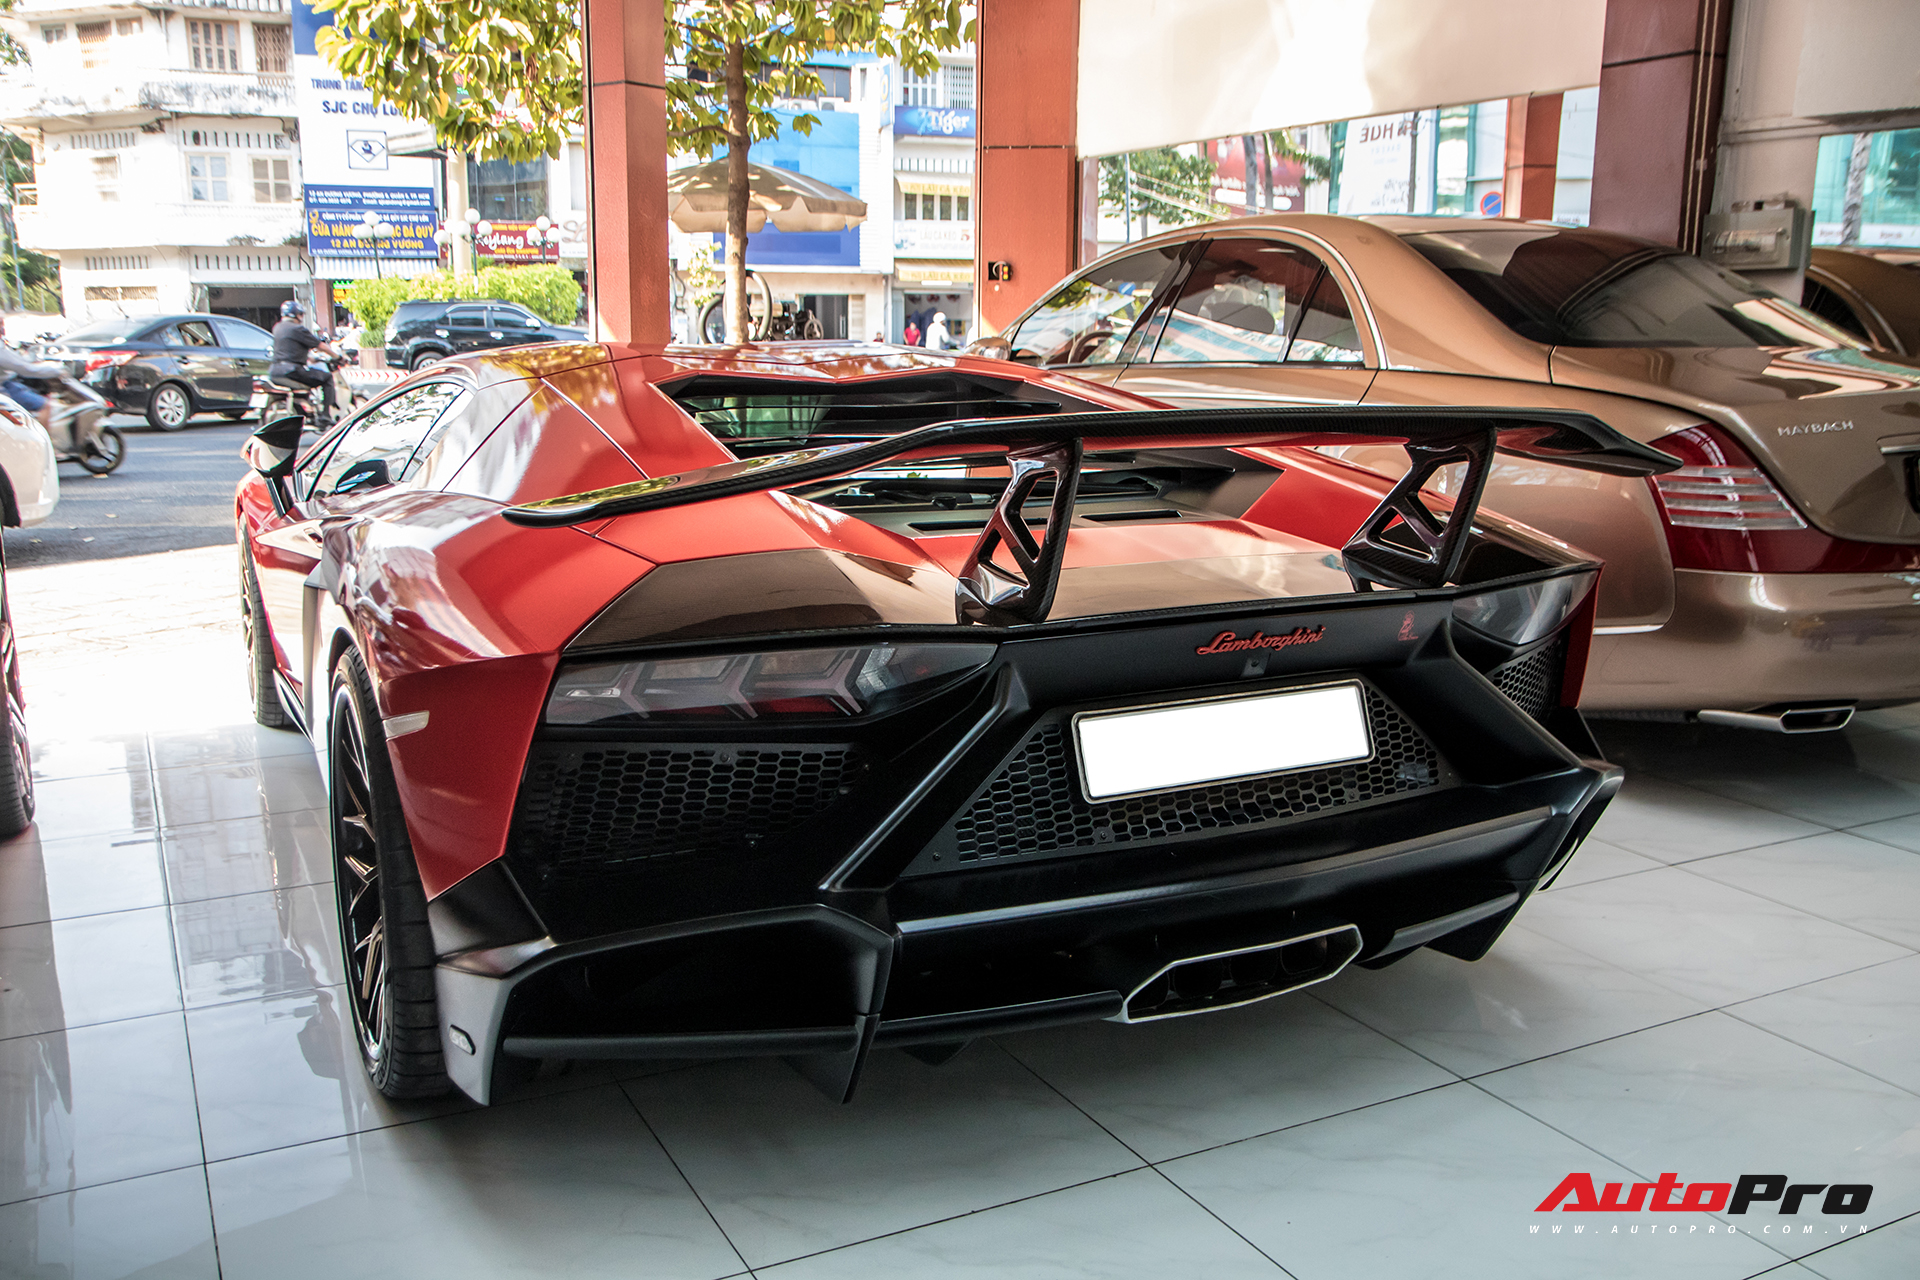 Thực hư chuyện Lamborghini Aventador độ bản 50 năm của đại gia Bạc Liêu bán lại cho showroom siêu xe lừng danh Sài Gòn - Ảnh 10.